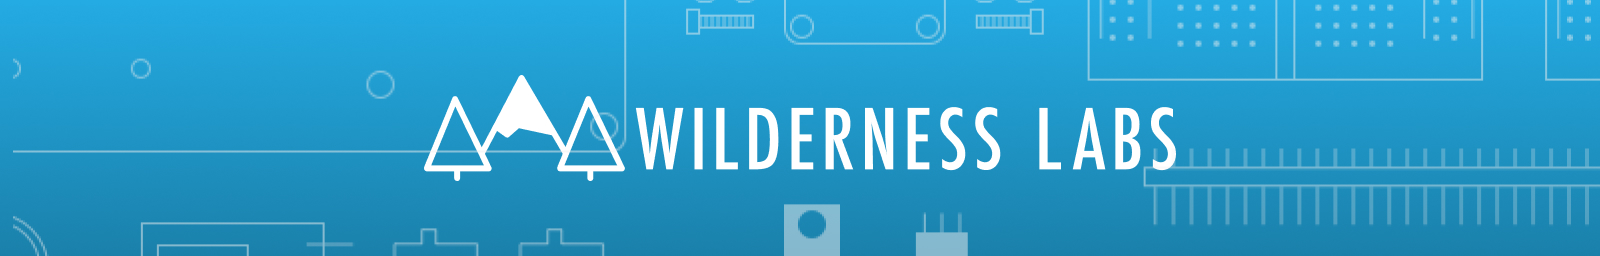 wilderness-labs-banner.jpg